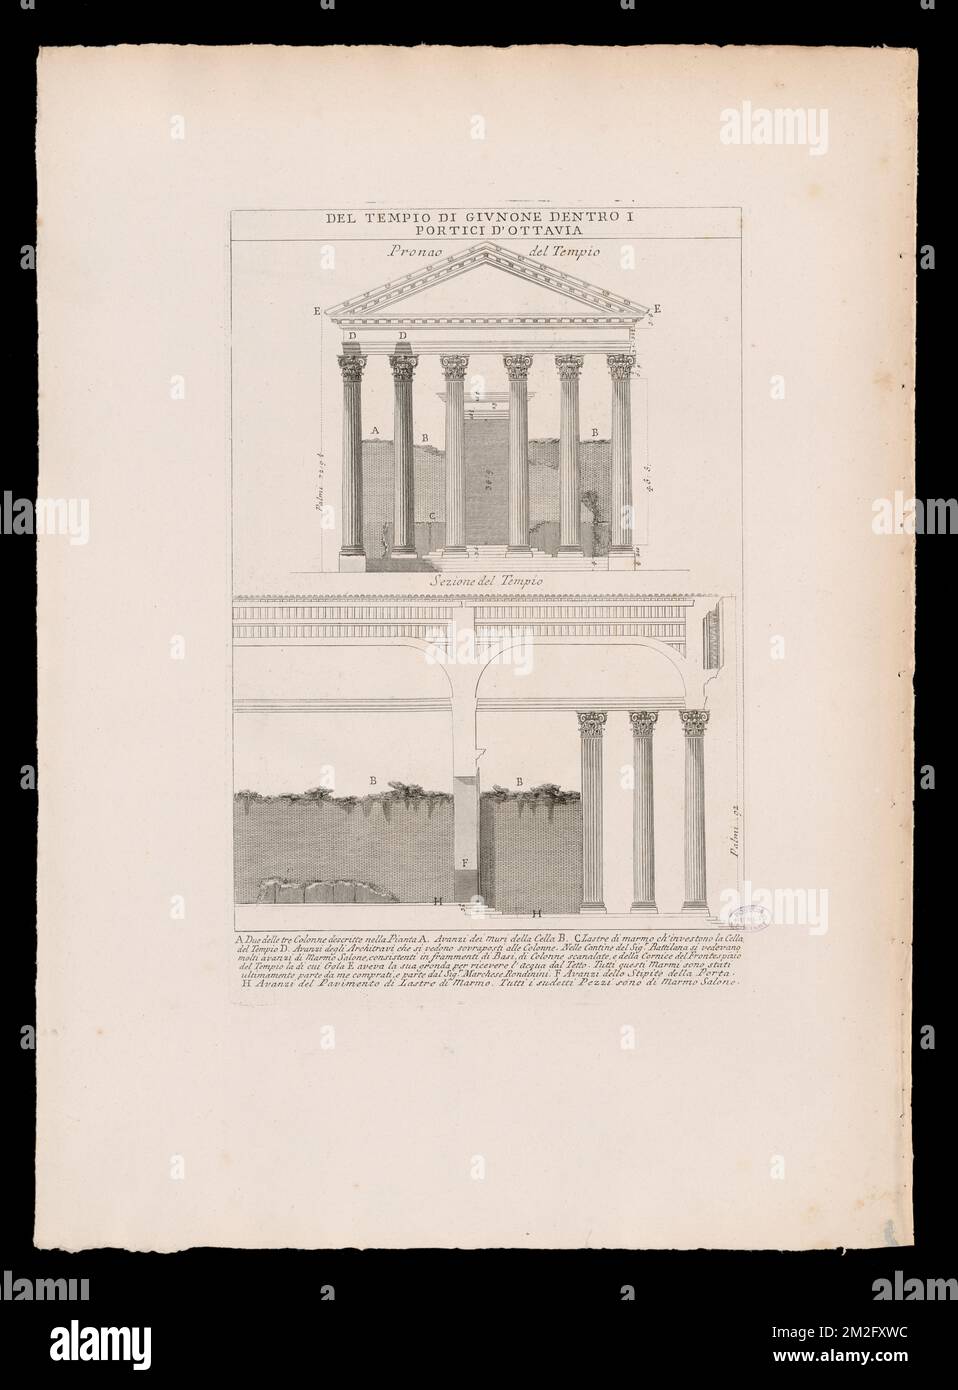 Del Tempio di Givnone dentro i Portici d'Ottavia , Archaeological sites, Roman temples, Columns. The Antonio Cardinal Tosti Collection Stock Photo